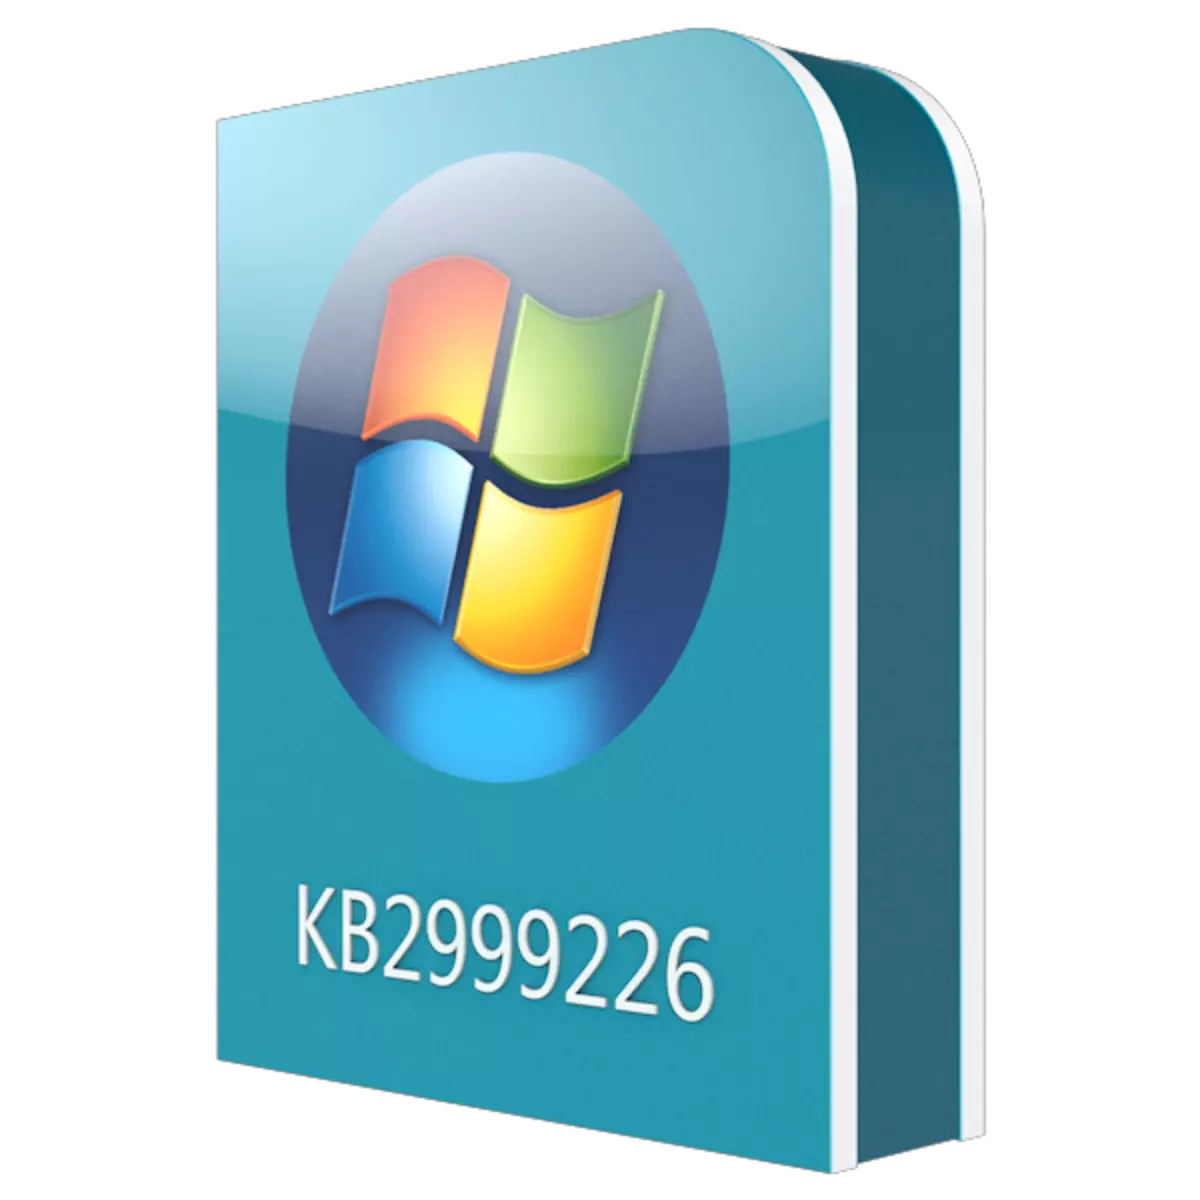 Preuzmite Update KB2999226 za Windows 7